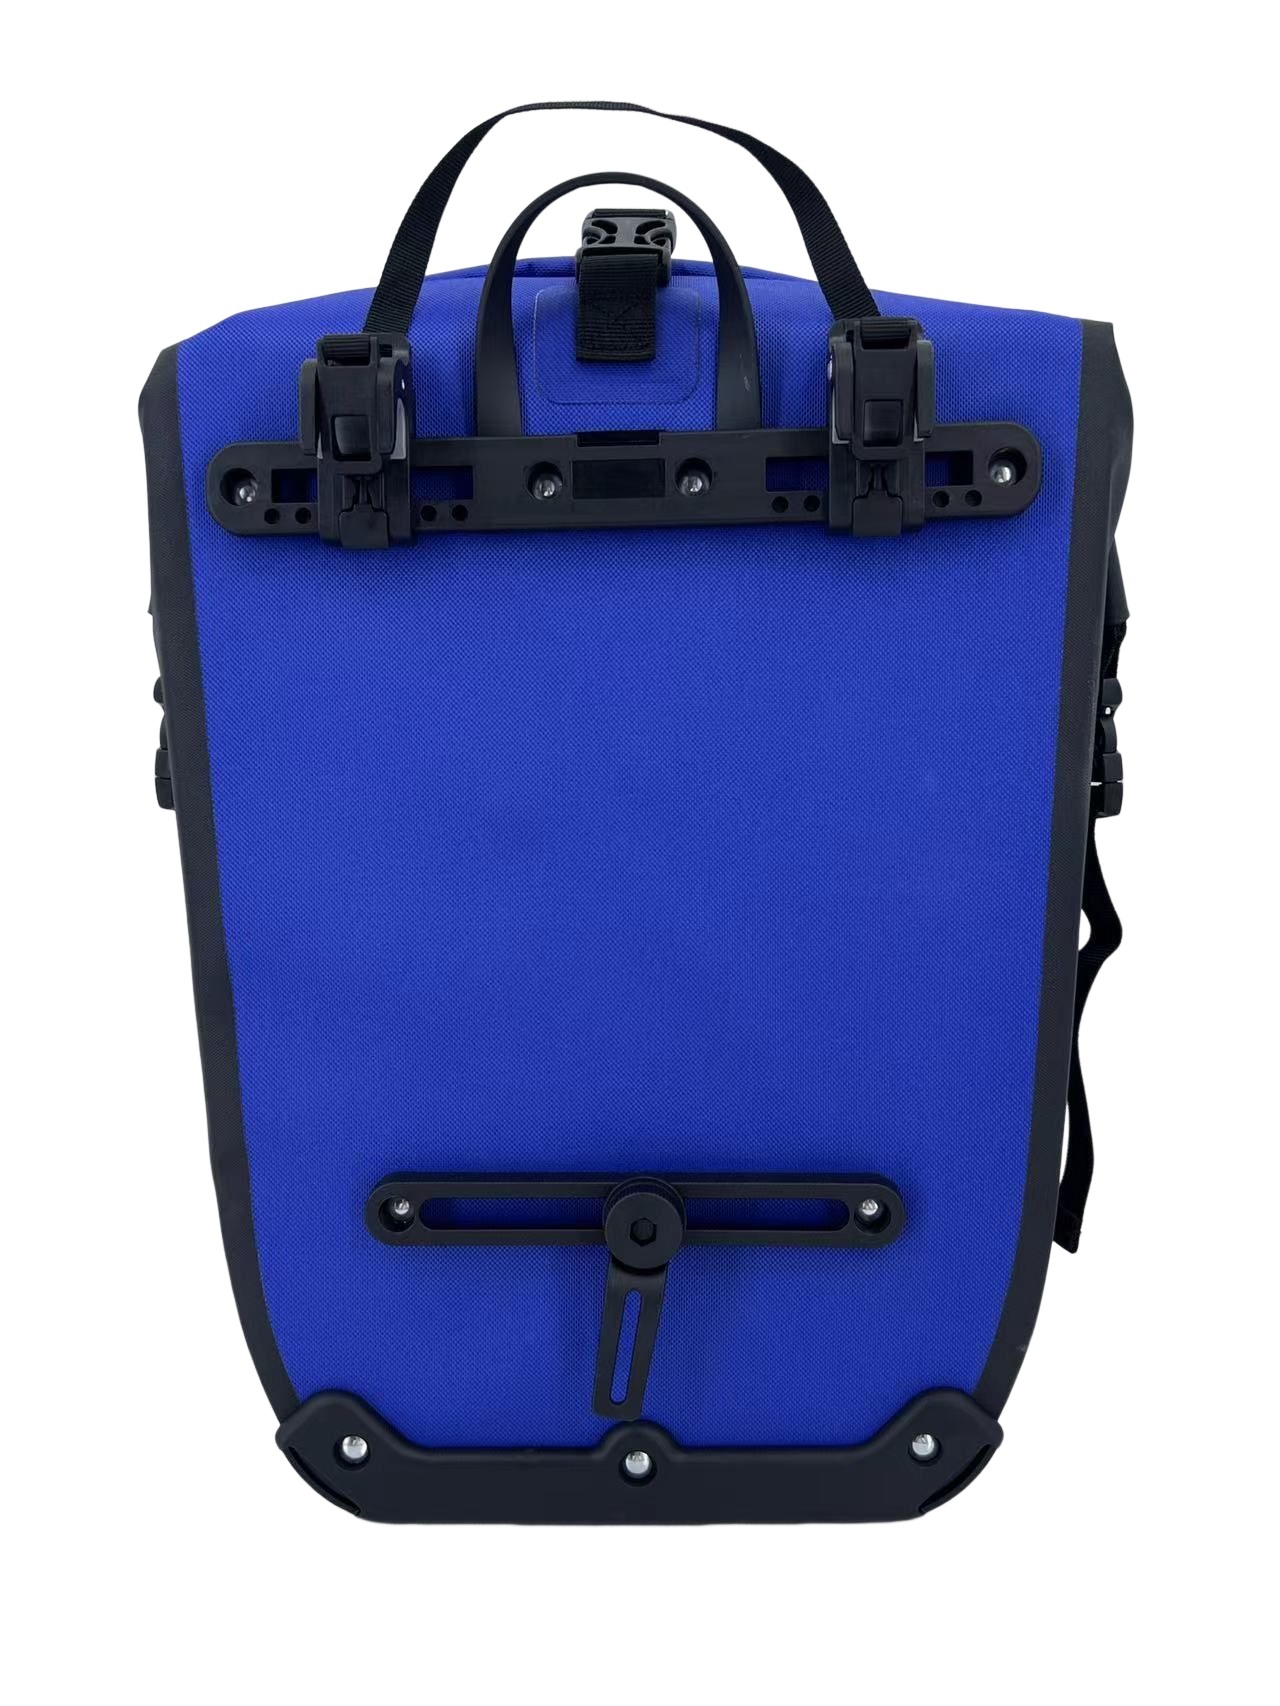 waterproof backpack suppliers